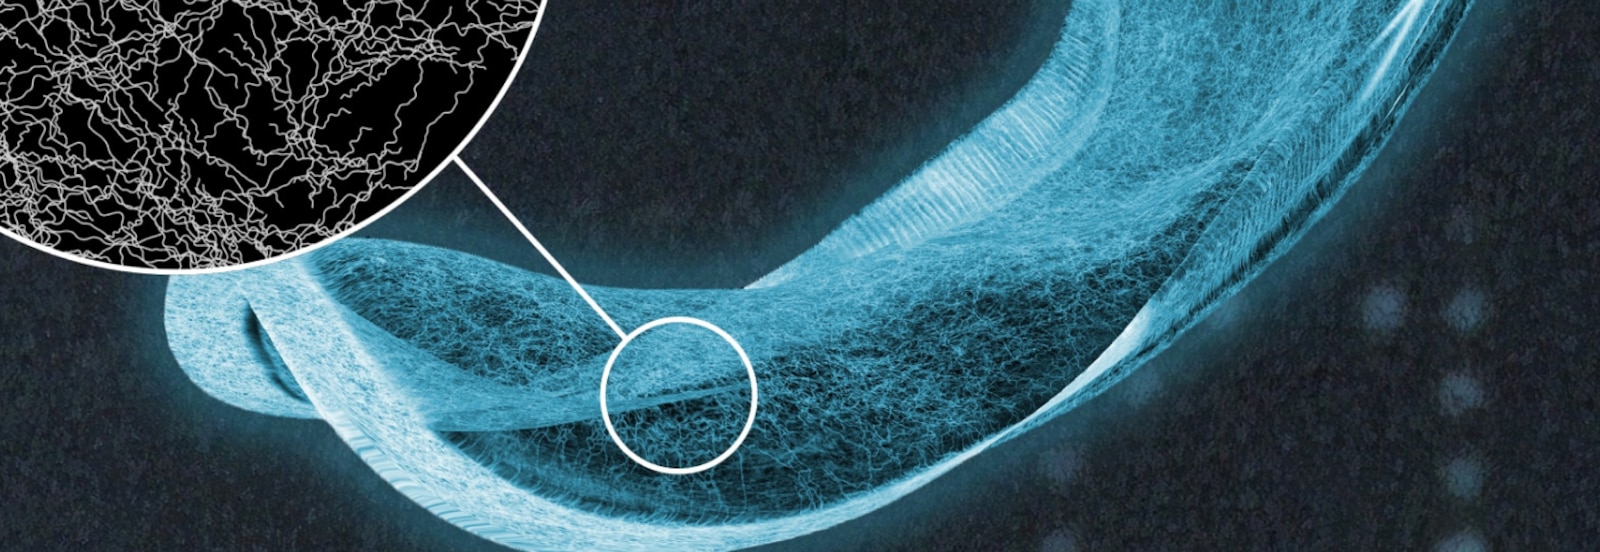 Image d’une serviette absorbante TENA, avec une vue détaillée des fibres du noyau absorbant. 